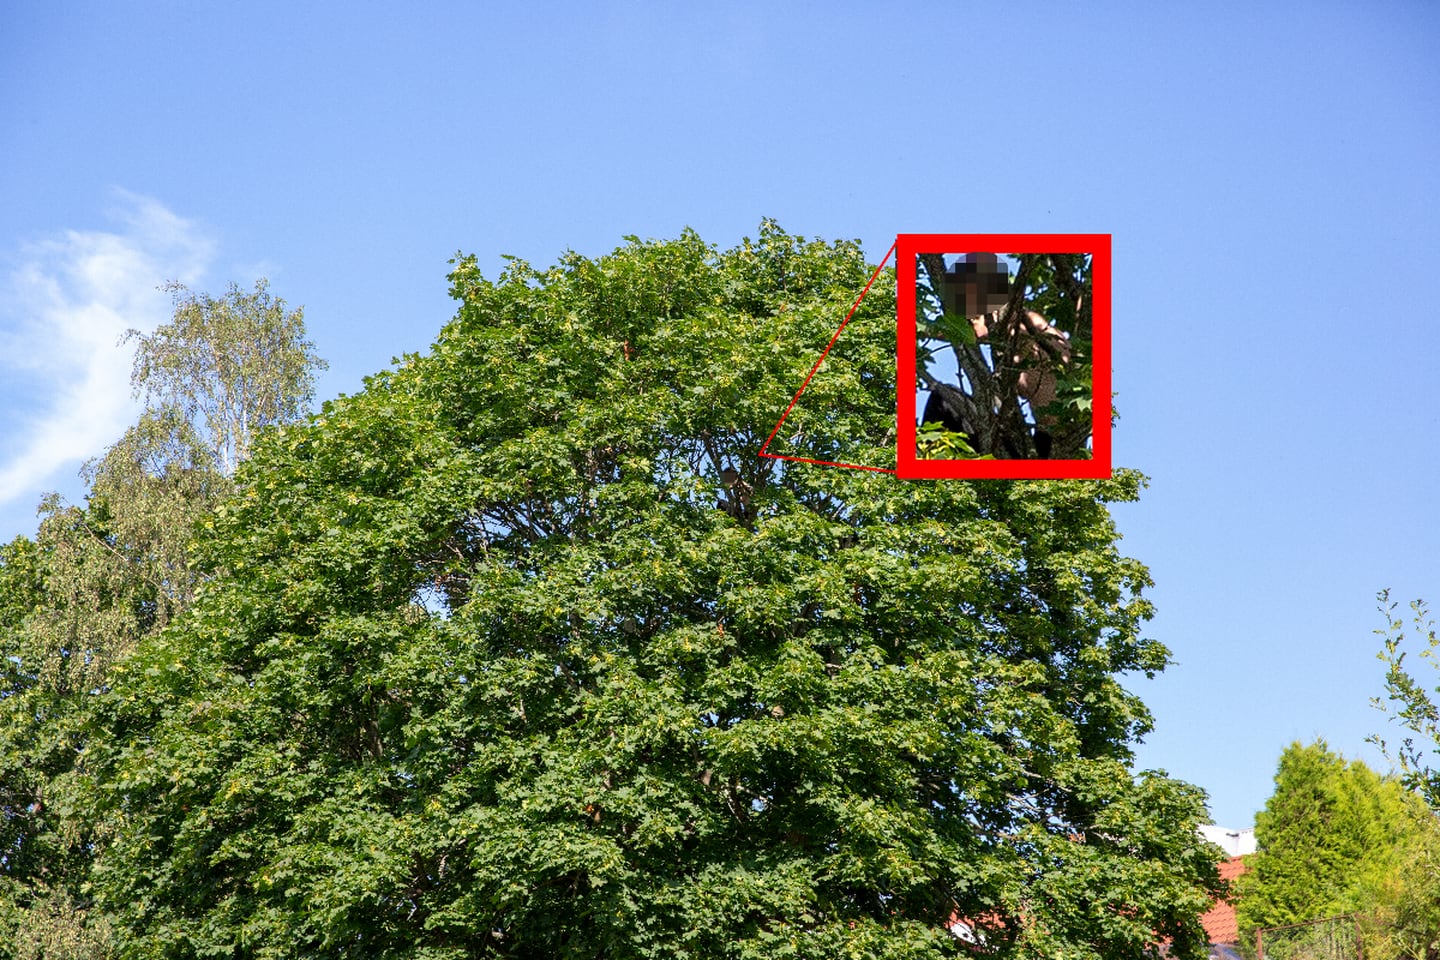 Mannen beveget seg mye i treet, og politiet fryktet han skulle falle.